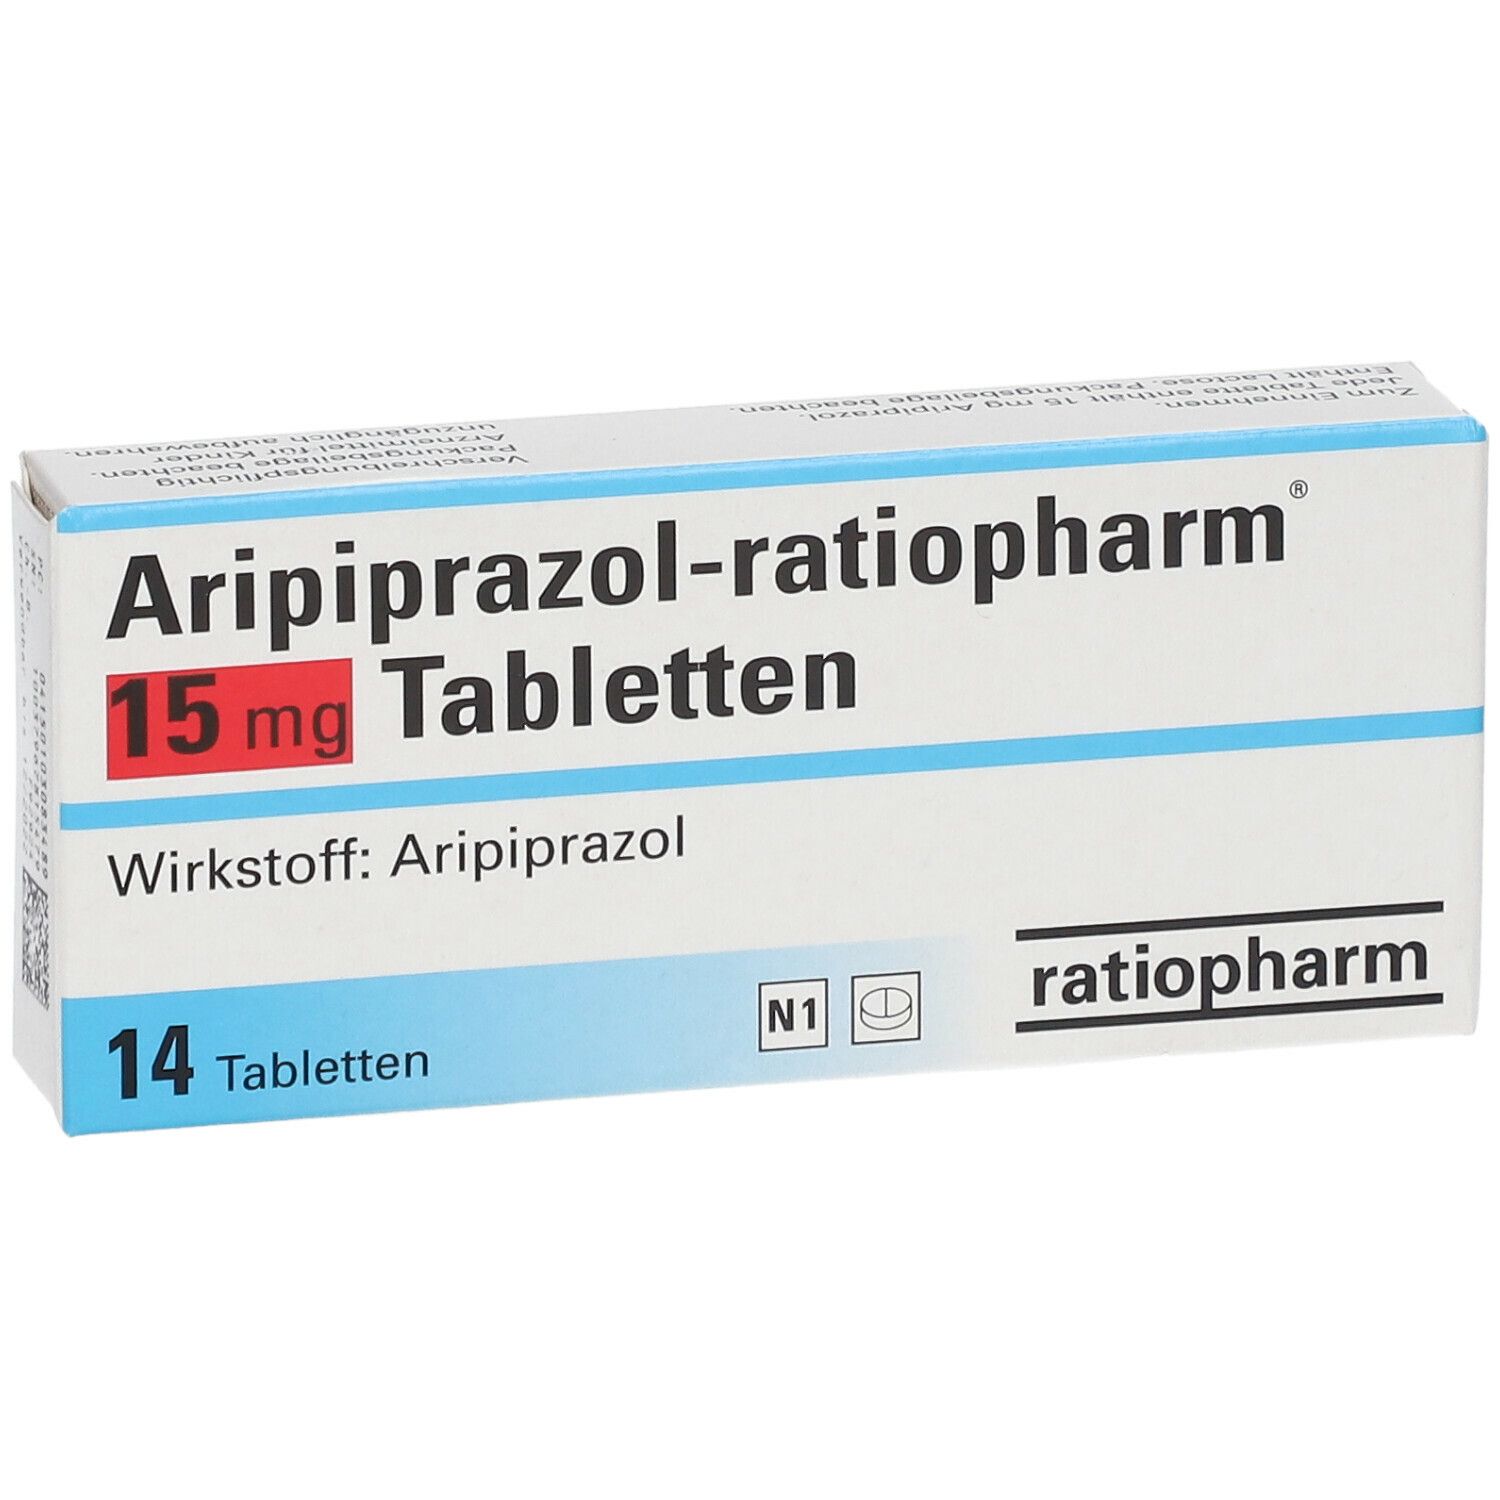 Aripiprazol-ratiopharm® 15 mg